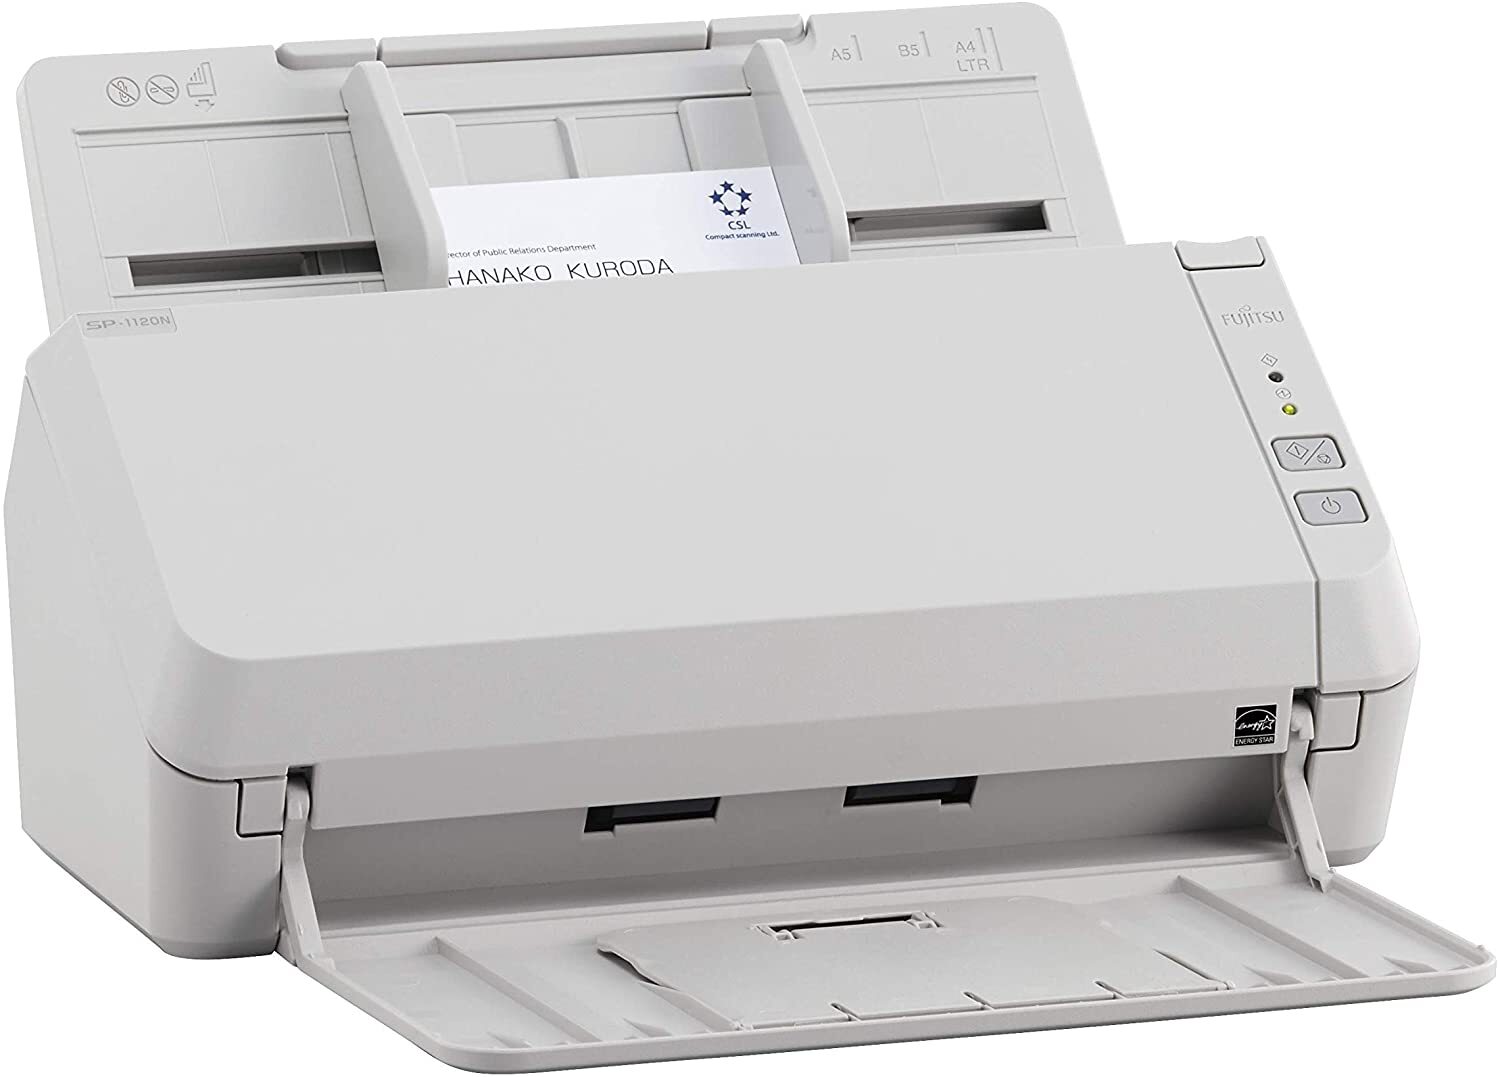 Документ-сканер A4 Fujitsu SP-1120N (PA03811-B001) фото 